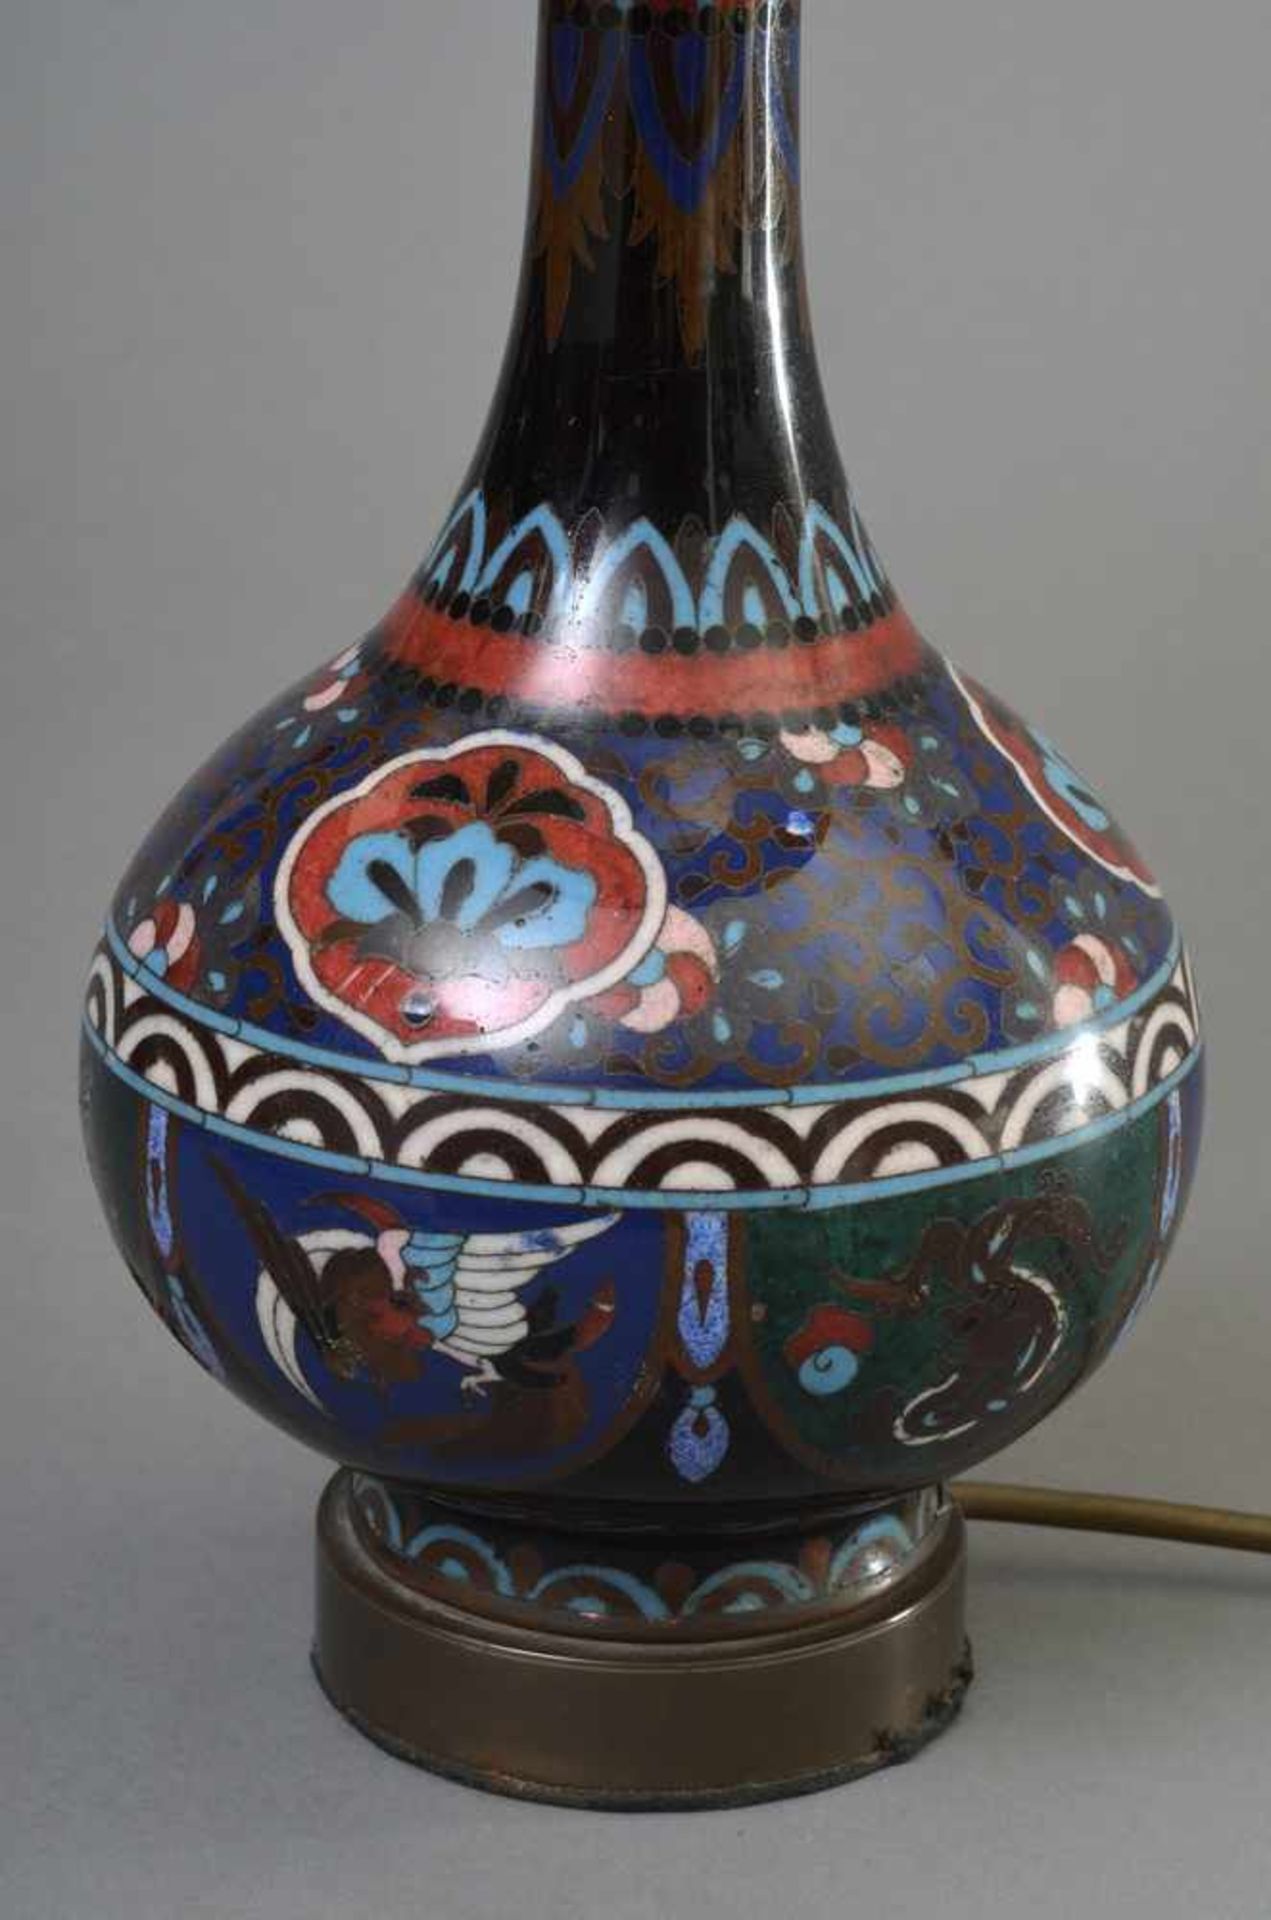 Bauchige Cloisonné Vase mit ornamentalem Dekor "Phönix und Drache", China Anfang 20.Jh., als Lampe - Bild 2 aus 4